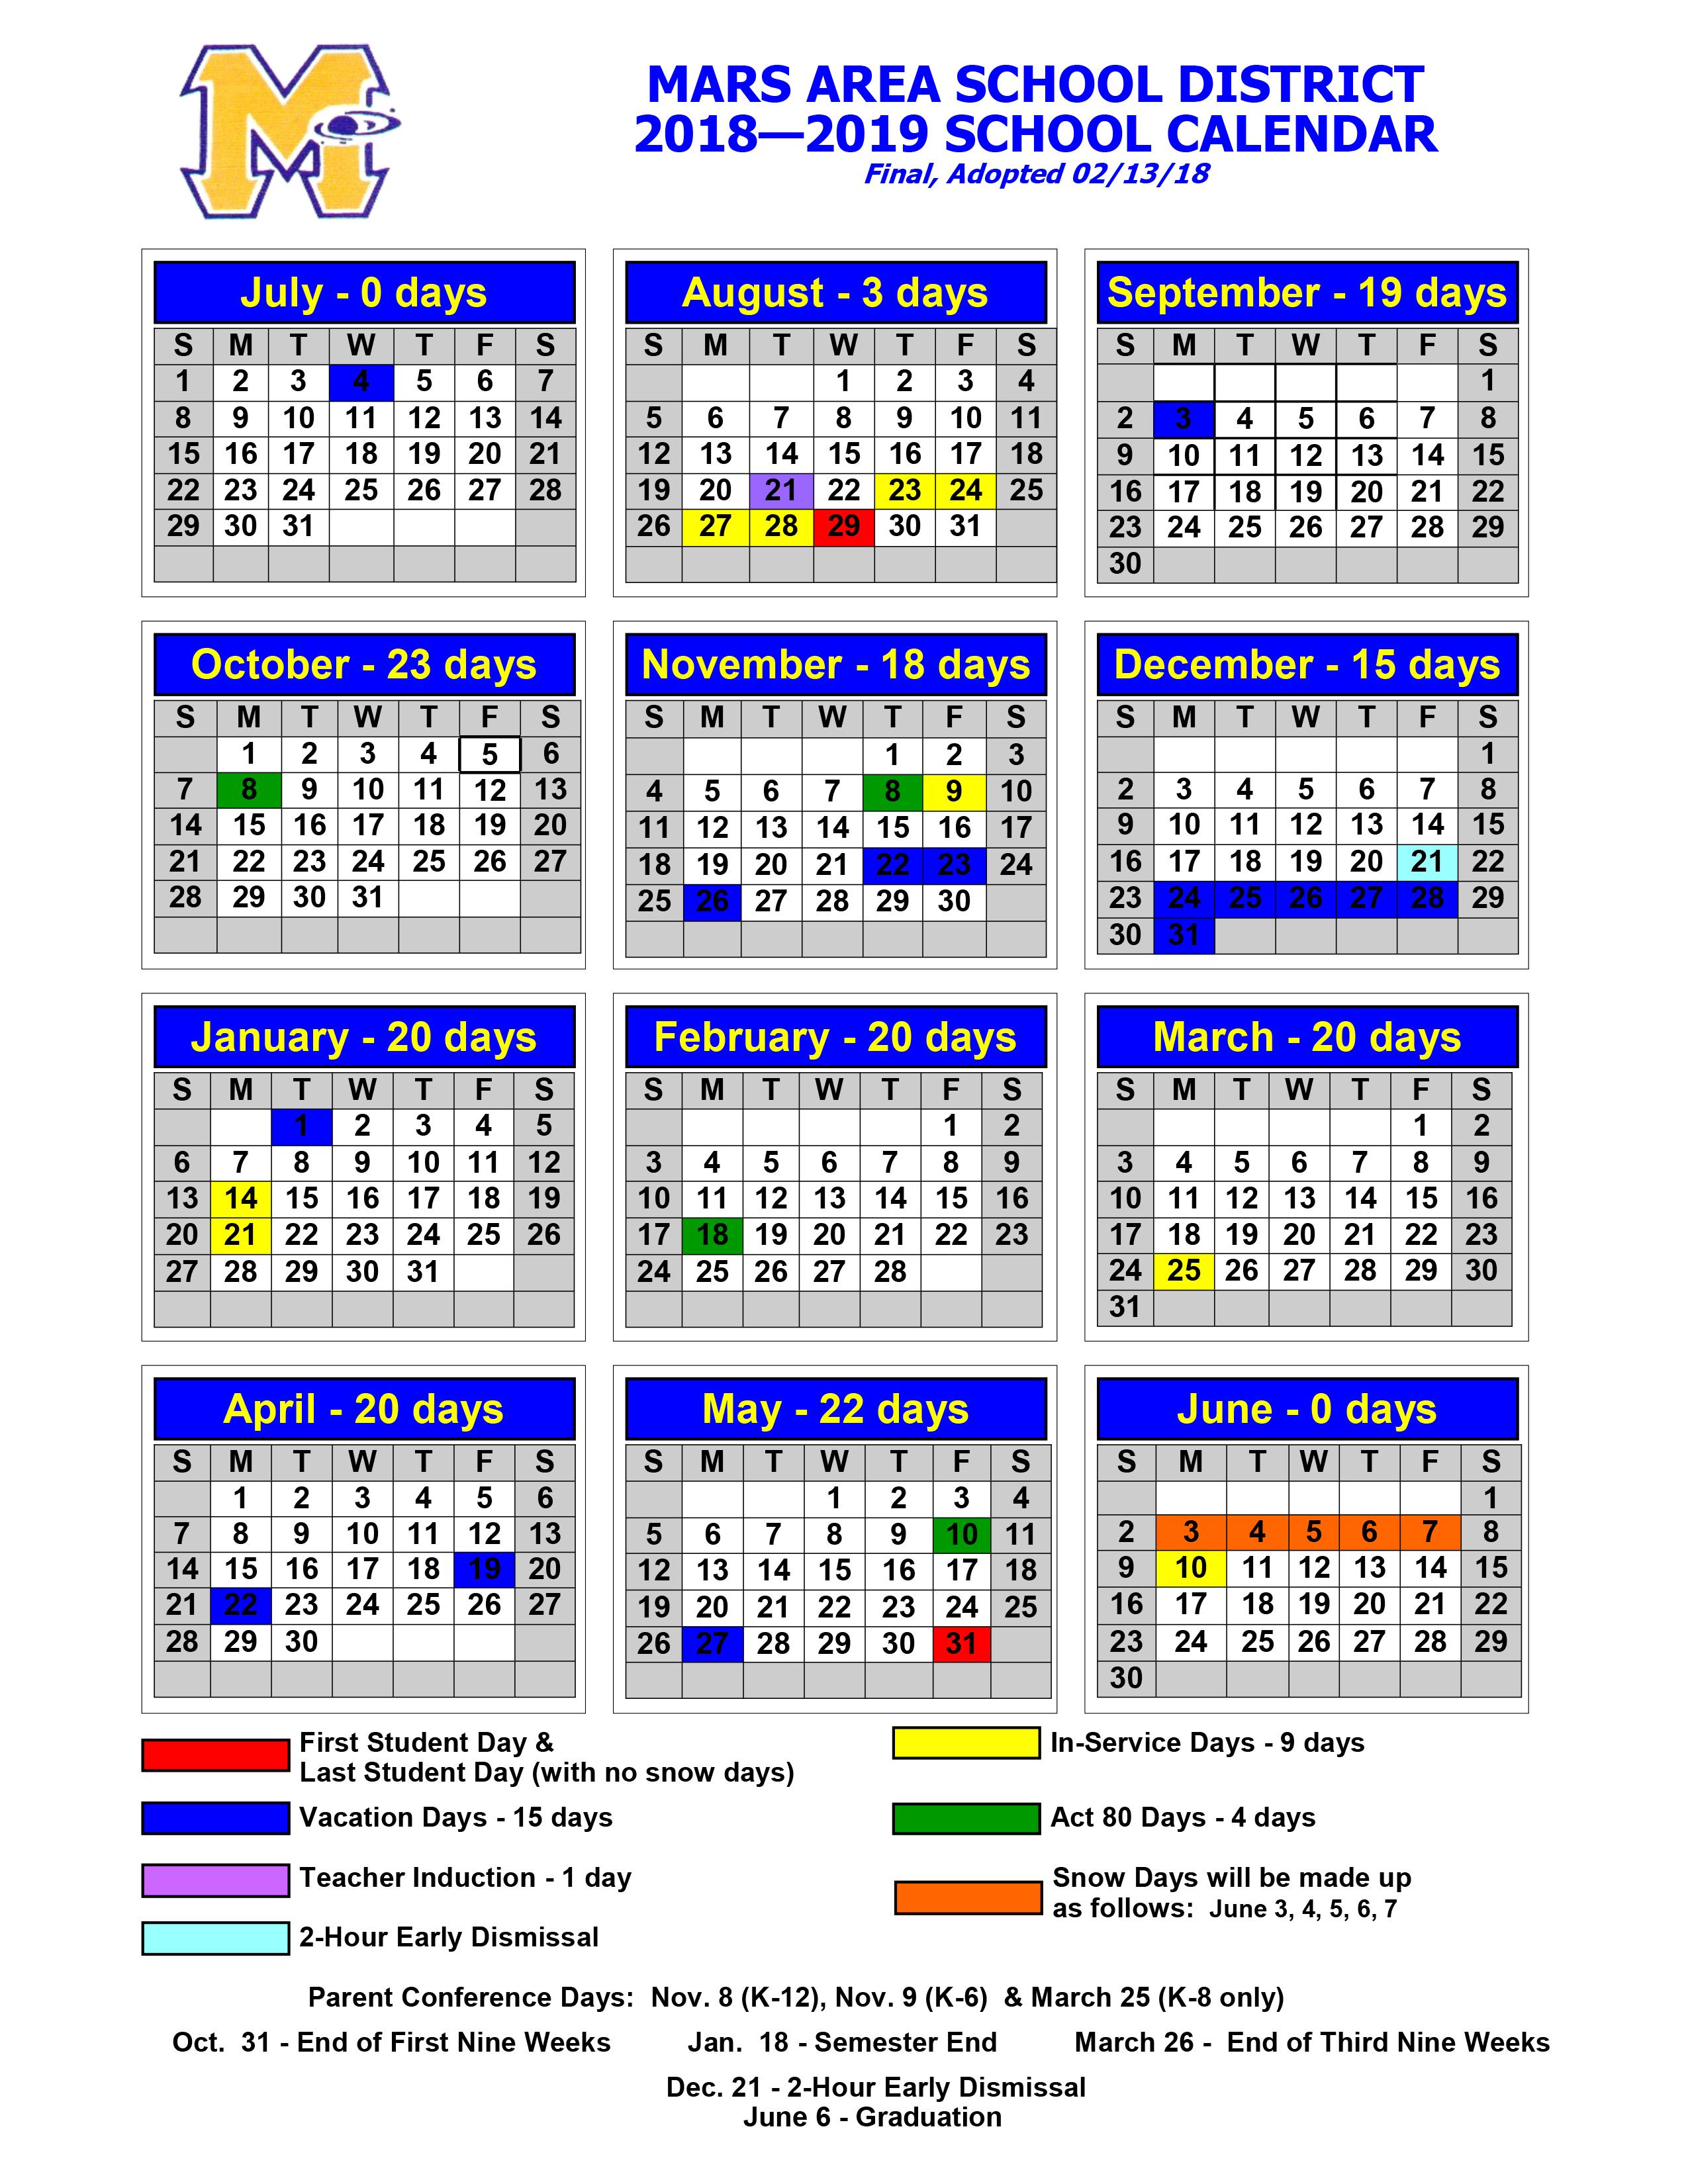 2018-2019 Mars Area School District Calendar